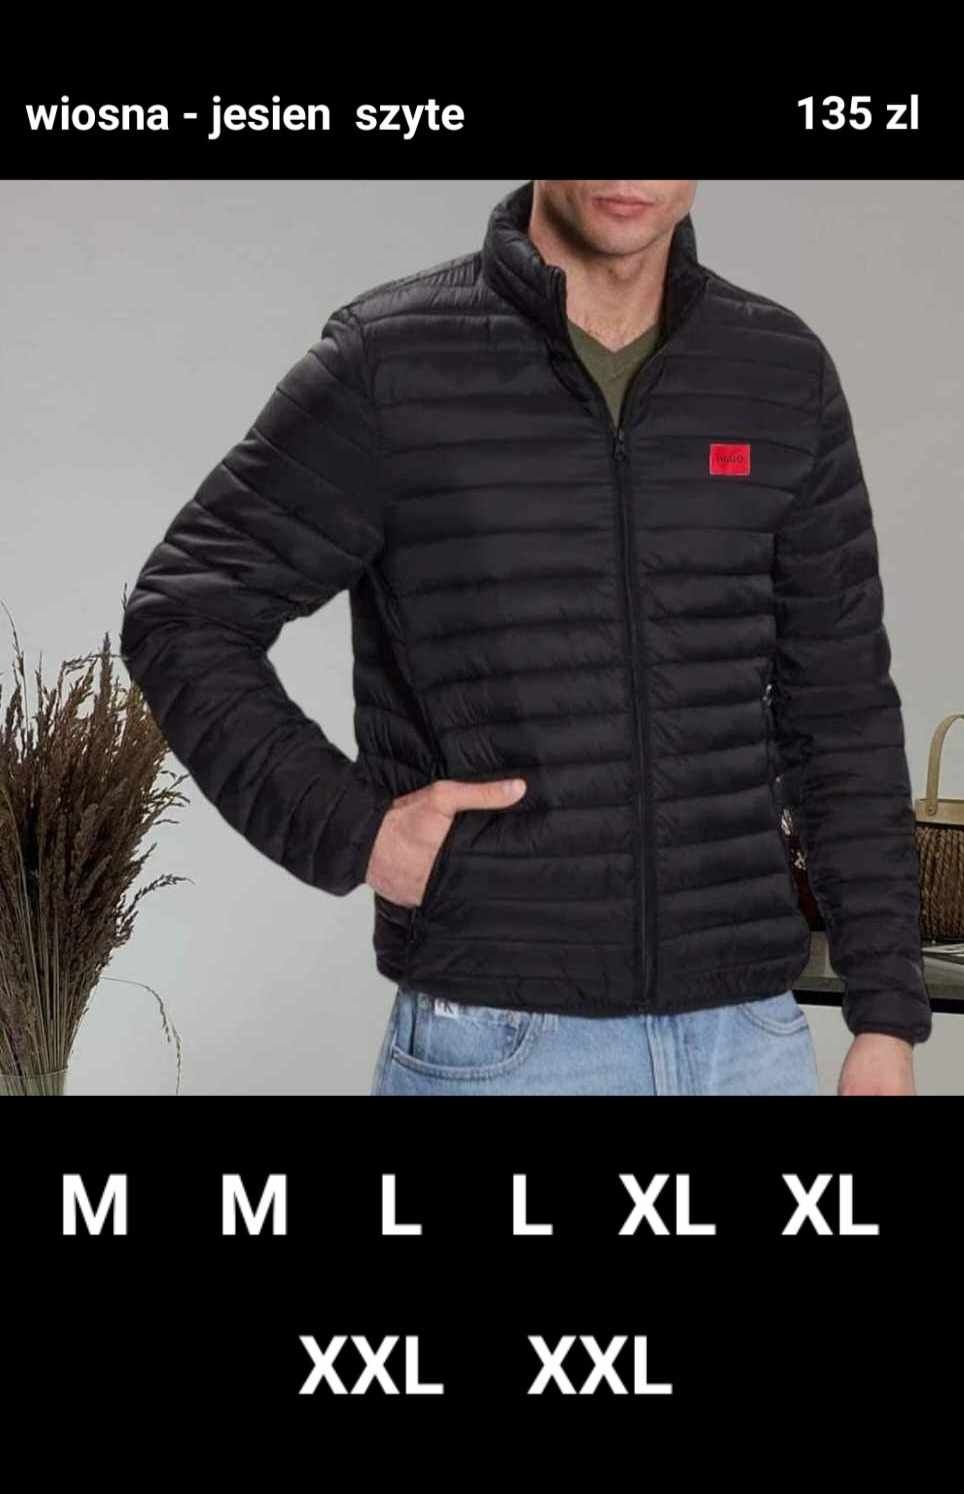 Nowa kurtka Męska Szyte Logo M L XL XXL różne modele.